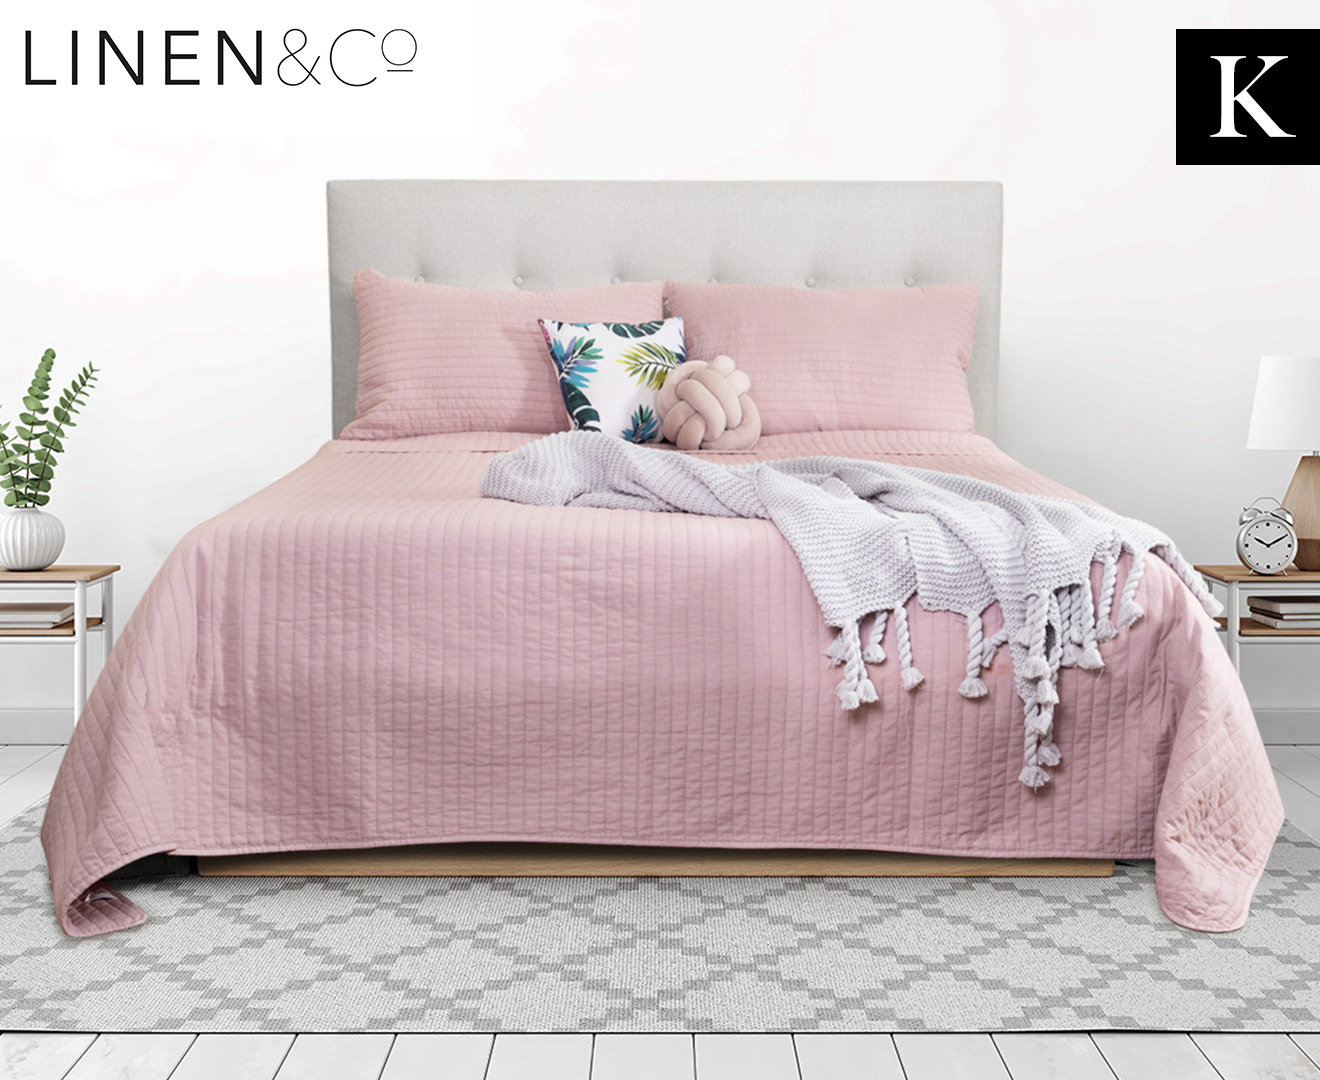 Linen Co Stonewashed King Bed Coverlet Set Dusky Pink Ebay